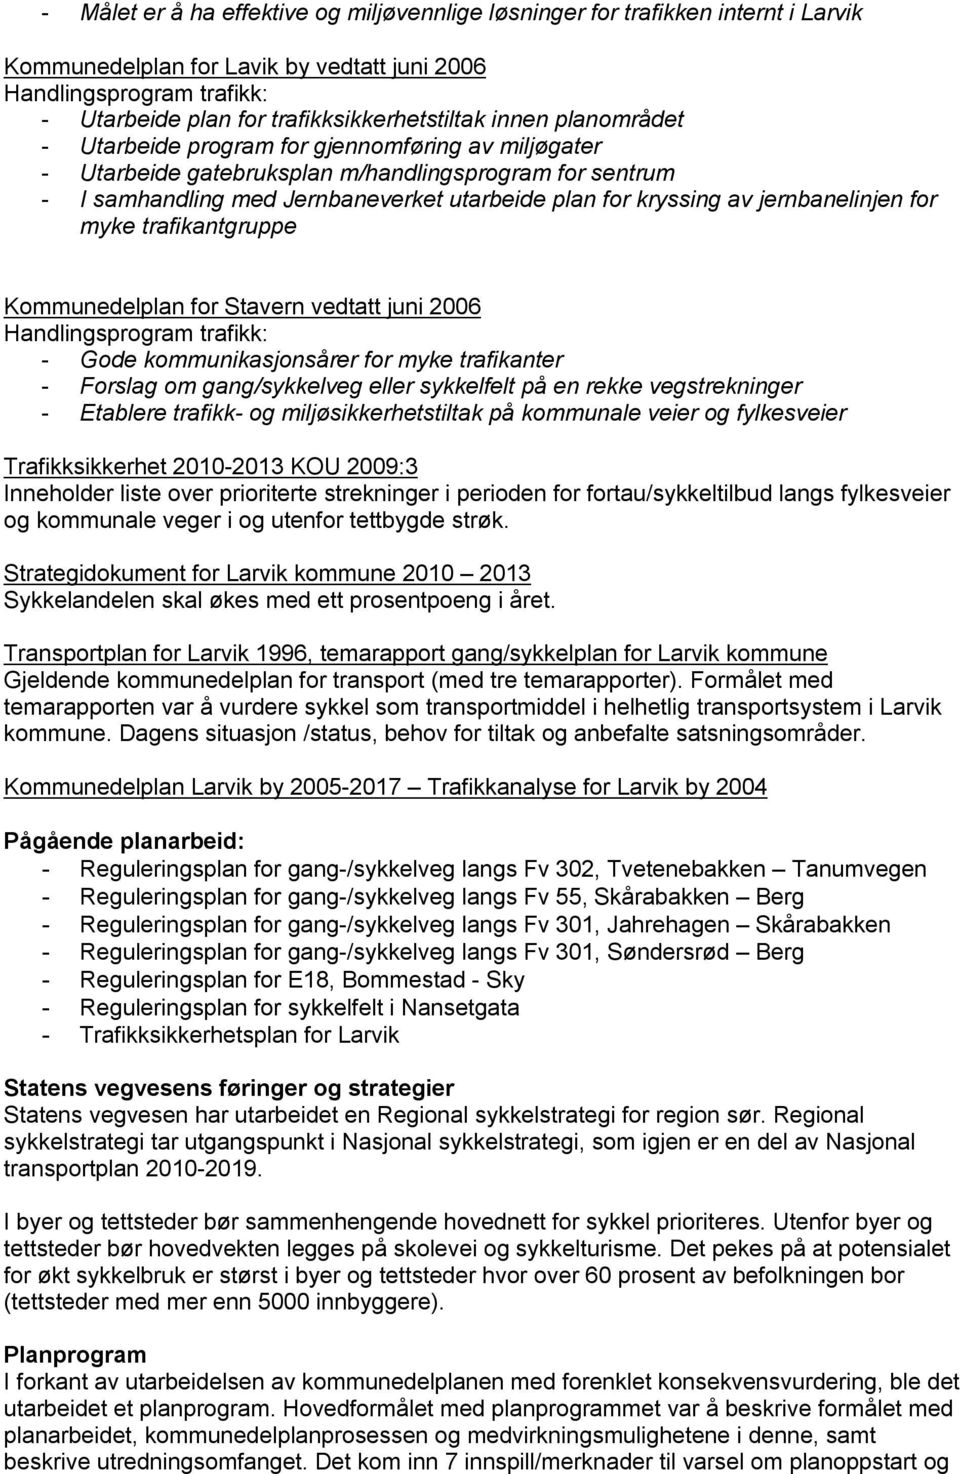 plan for kryssing av jernbanelinjen for myke trafikantgruppe Kommunedelplan for Stavern vedtatt juni 2006 Handlingsprogram trafikk: - Gode kommunikasjonsårer for myke trafikanter - Forslag om